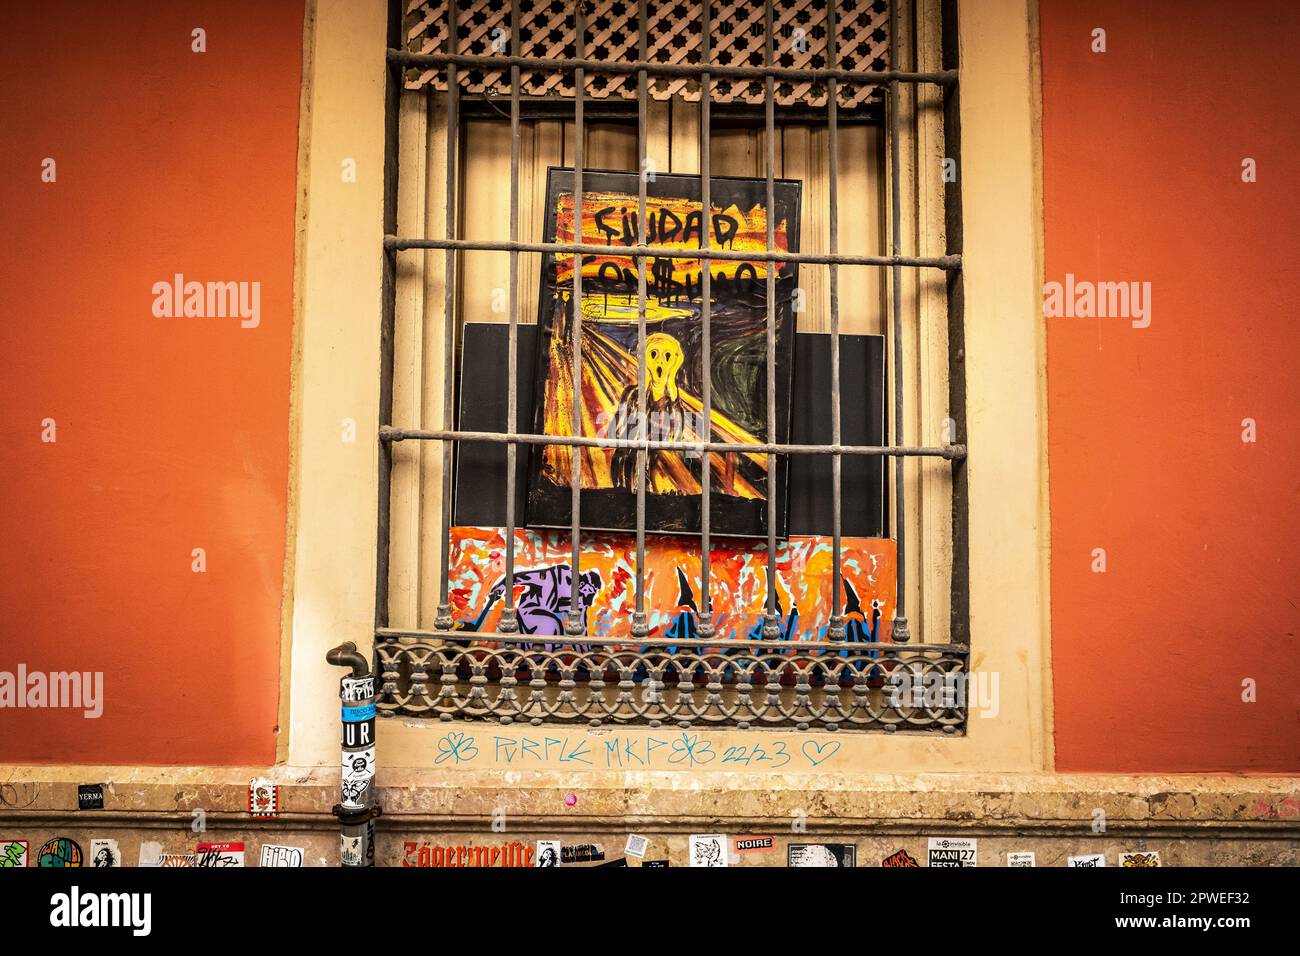 Málaga, Espagne - "Ciudad con$umo", affiche dans une fenêtre, surtourisme, tourisme de masse, consumérisme Banque D'Images